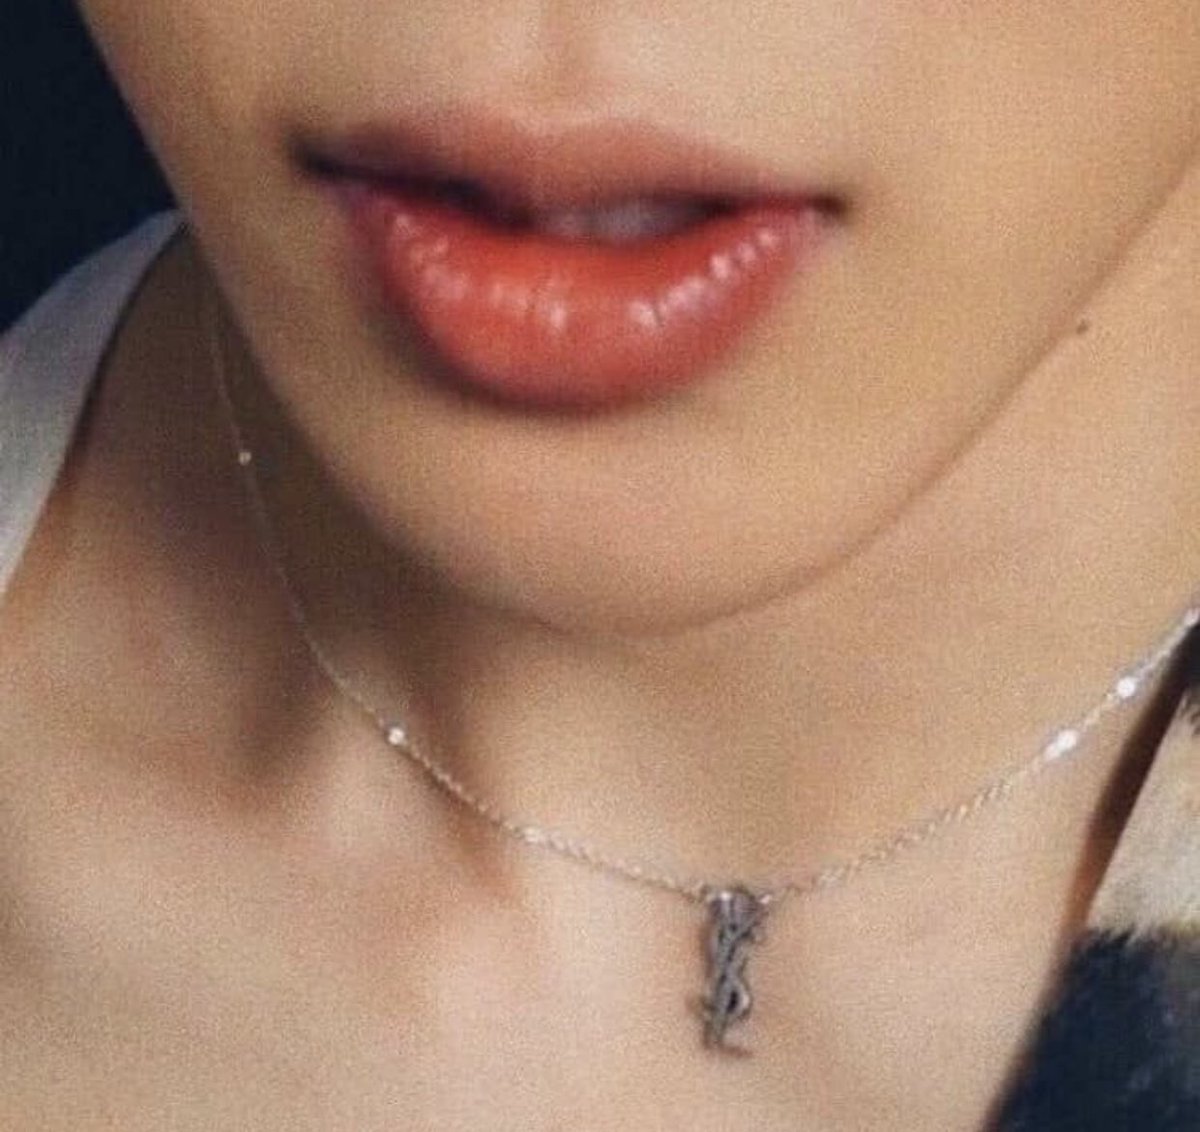 jimin’s pretty plumpy lips—a thread